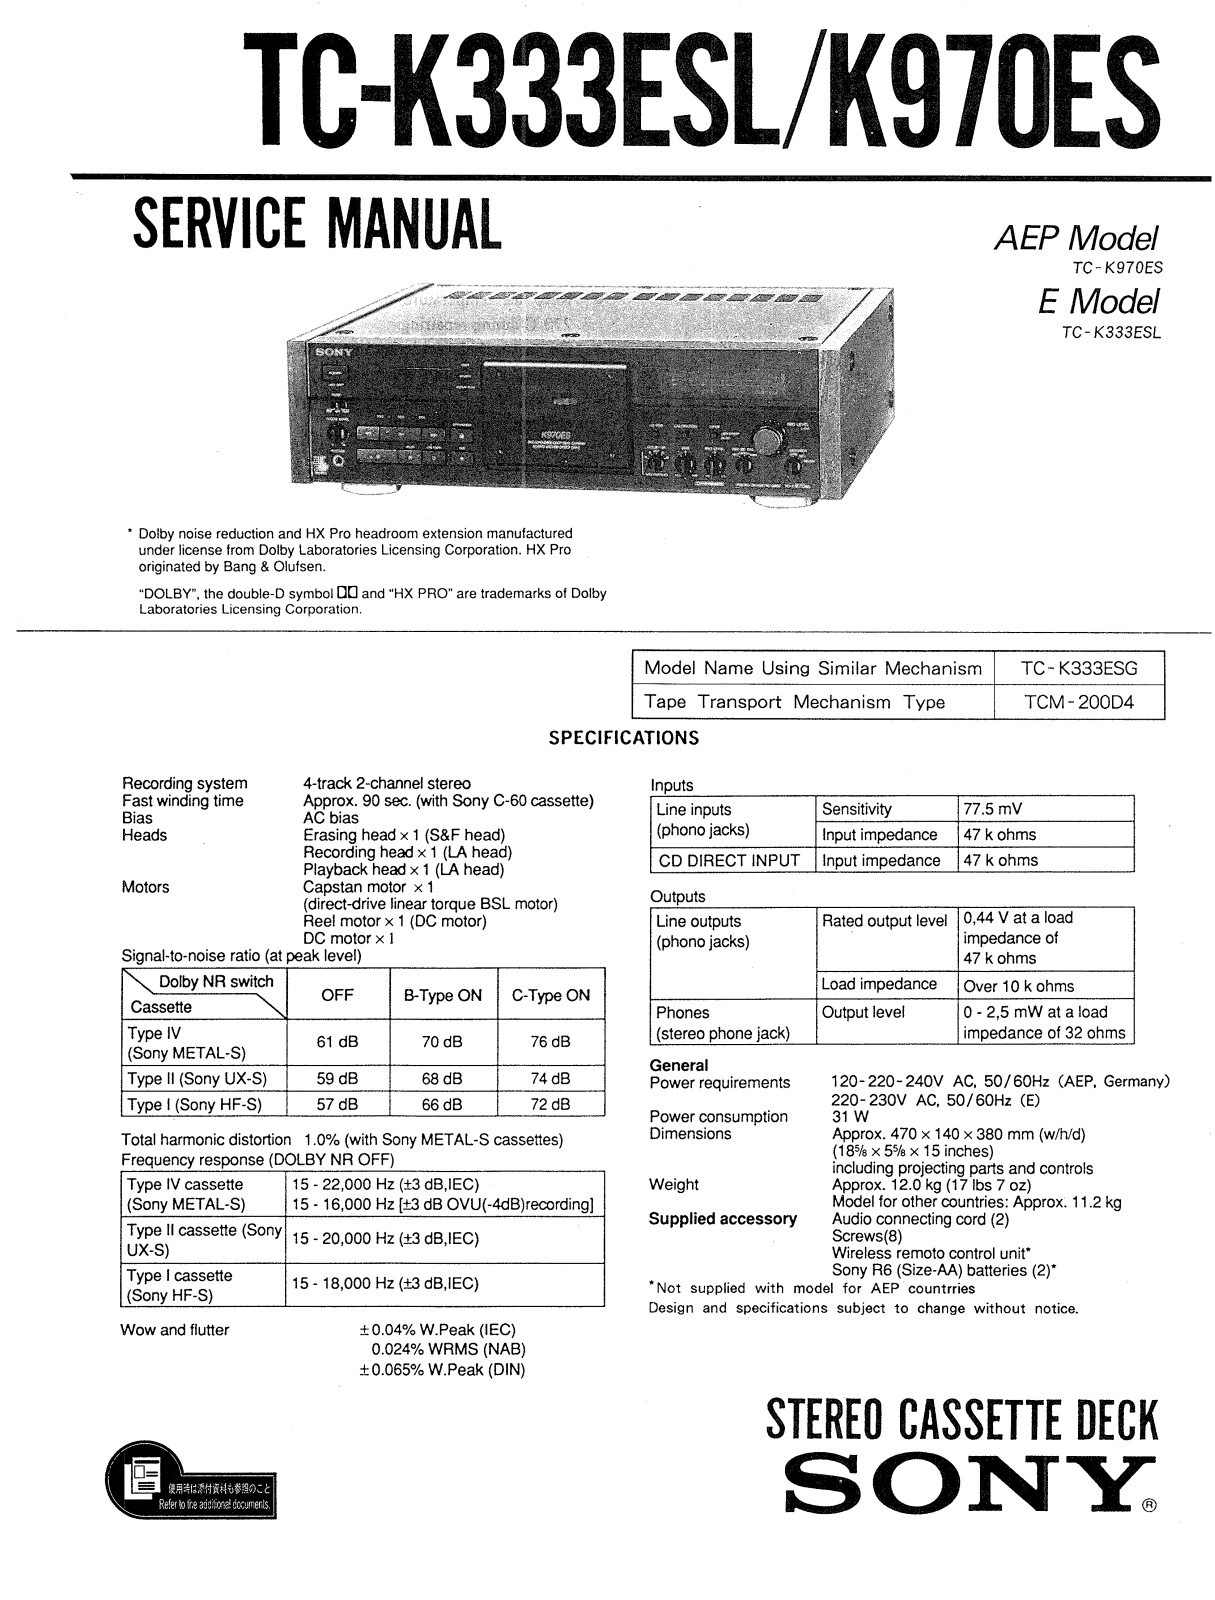 Sony tc k333 t, TC K333ESL, TC K970ES, c k970es Service Manual